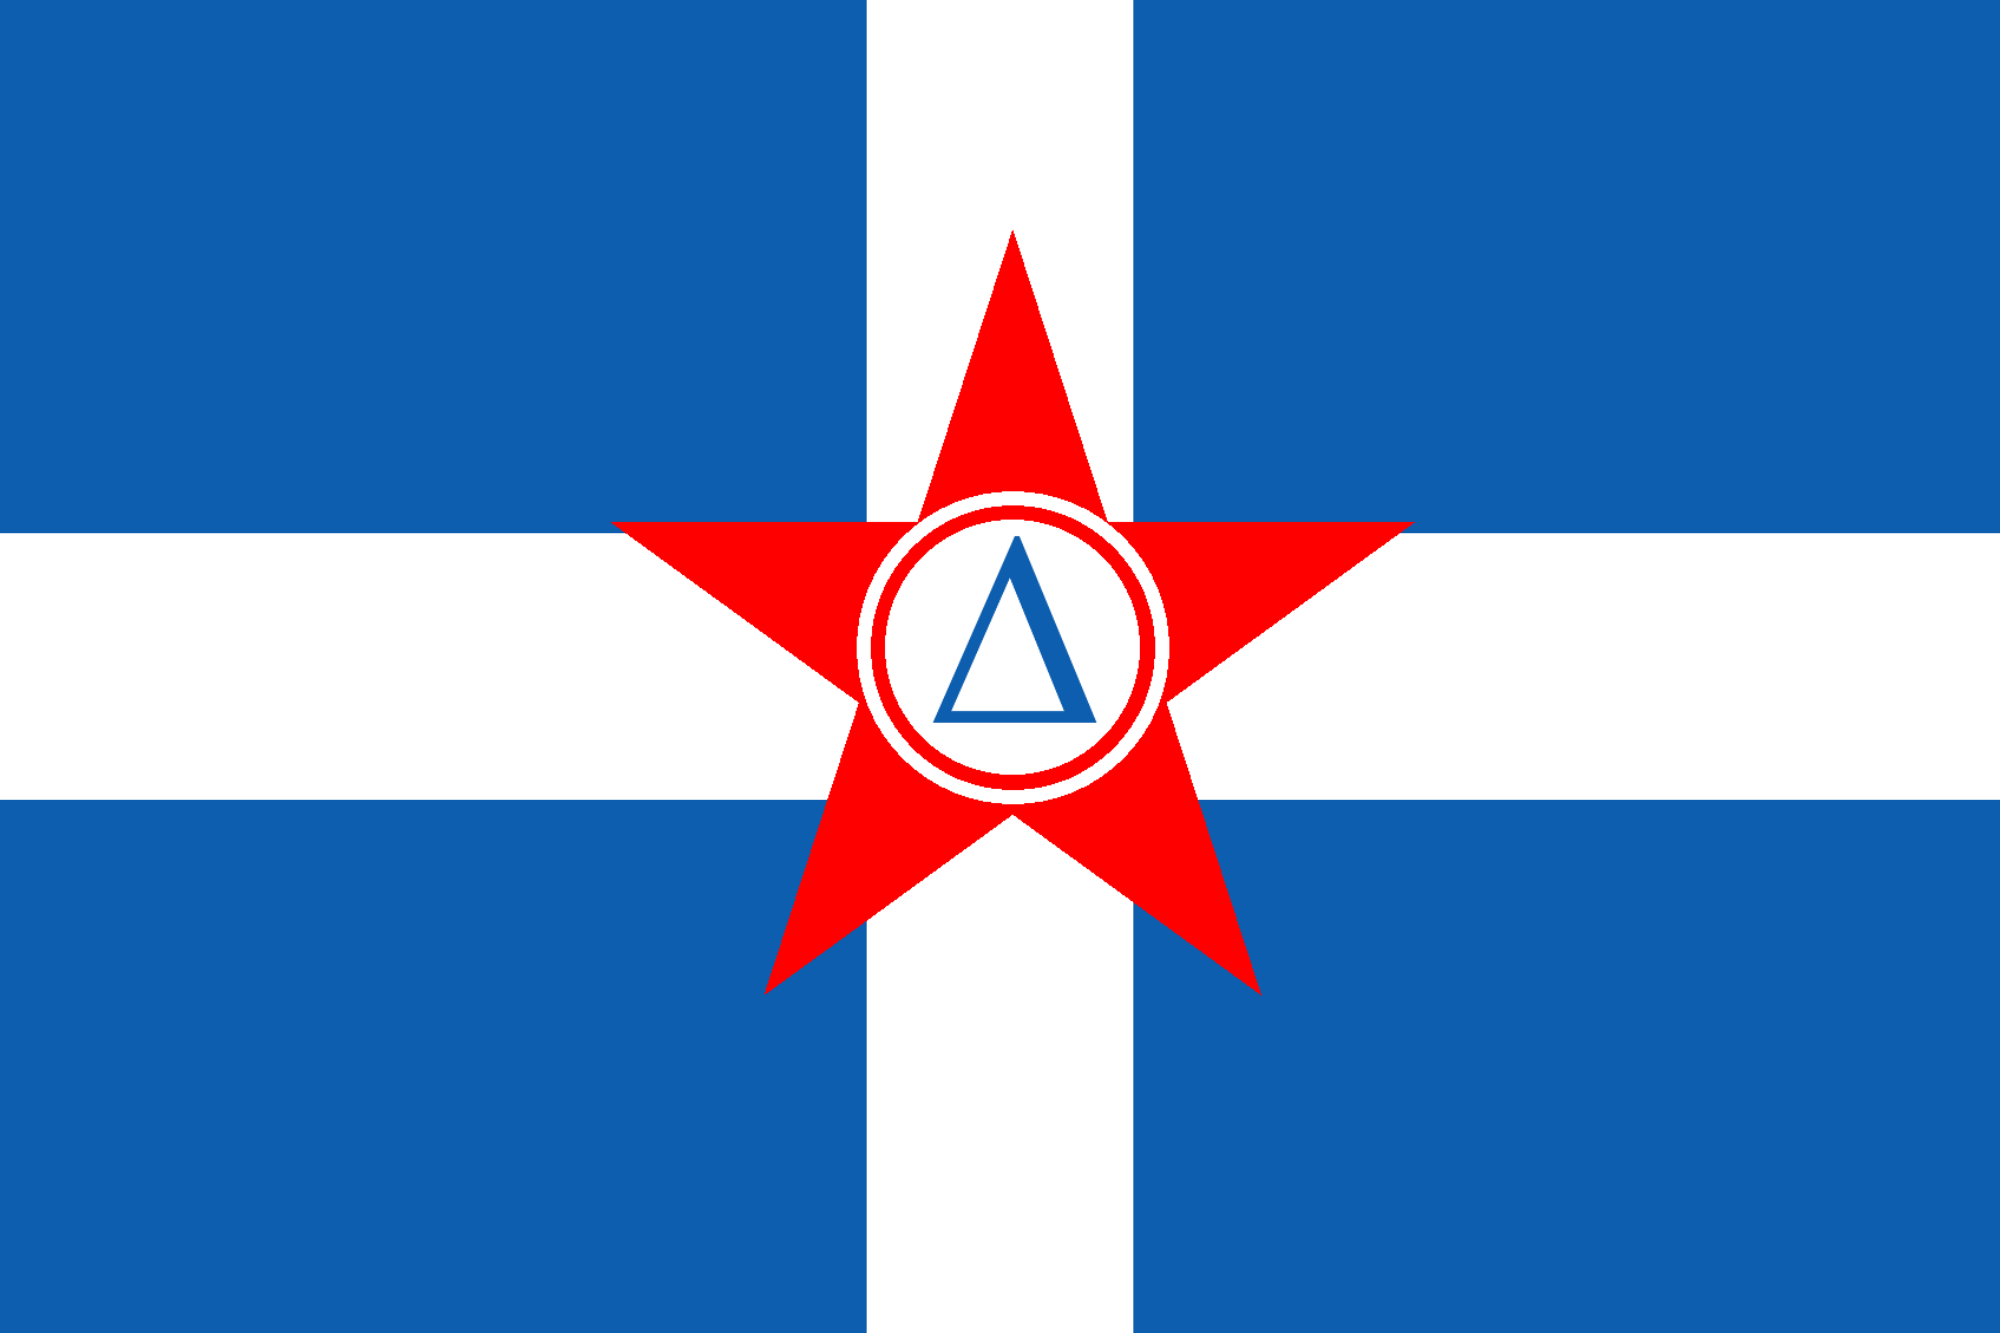 Greek Democratic Army